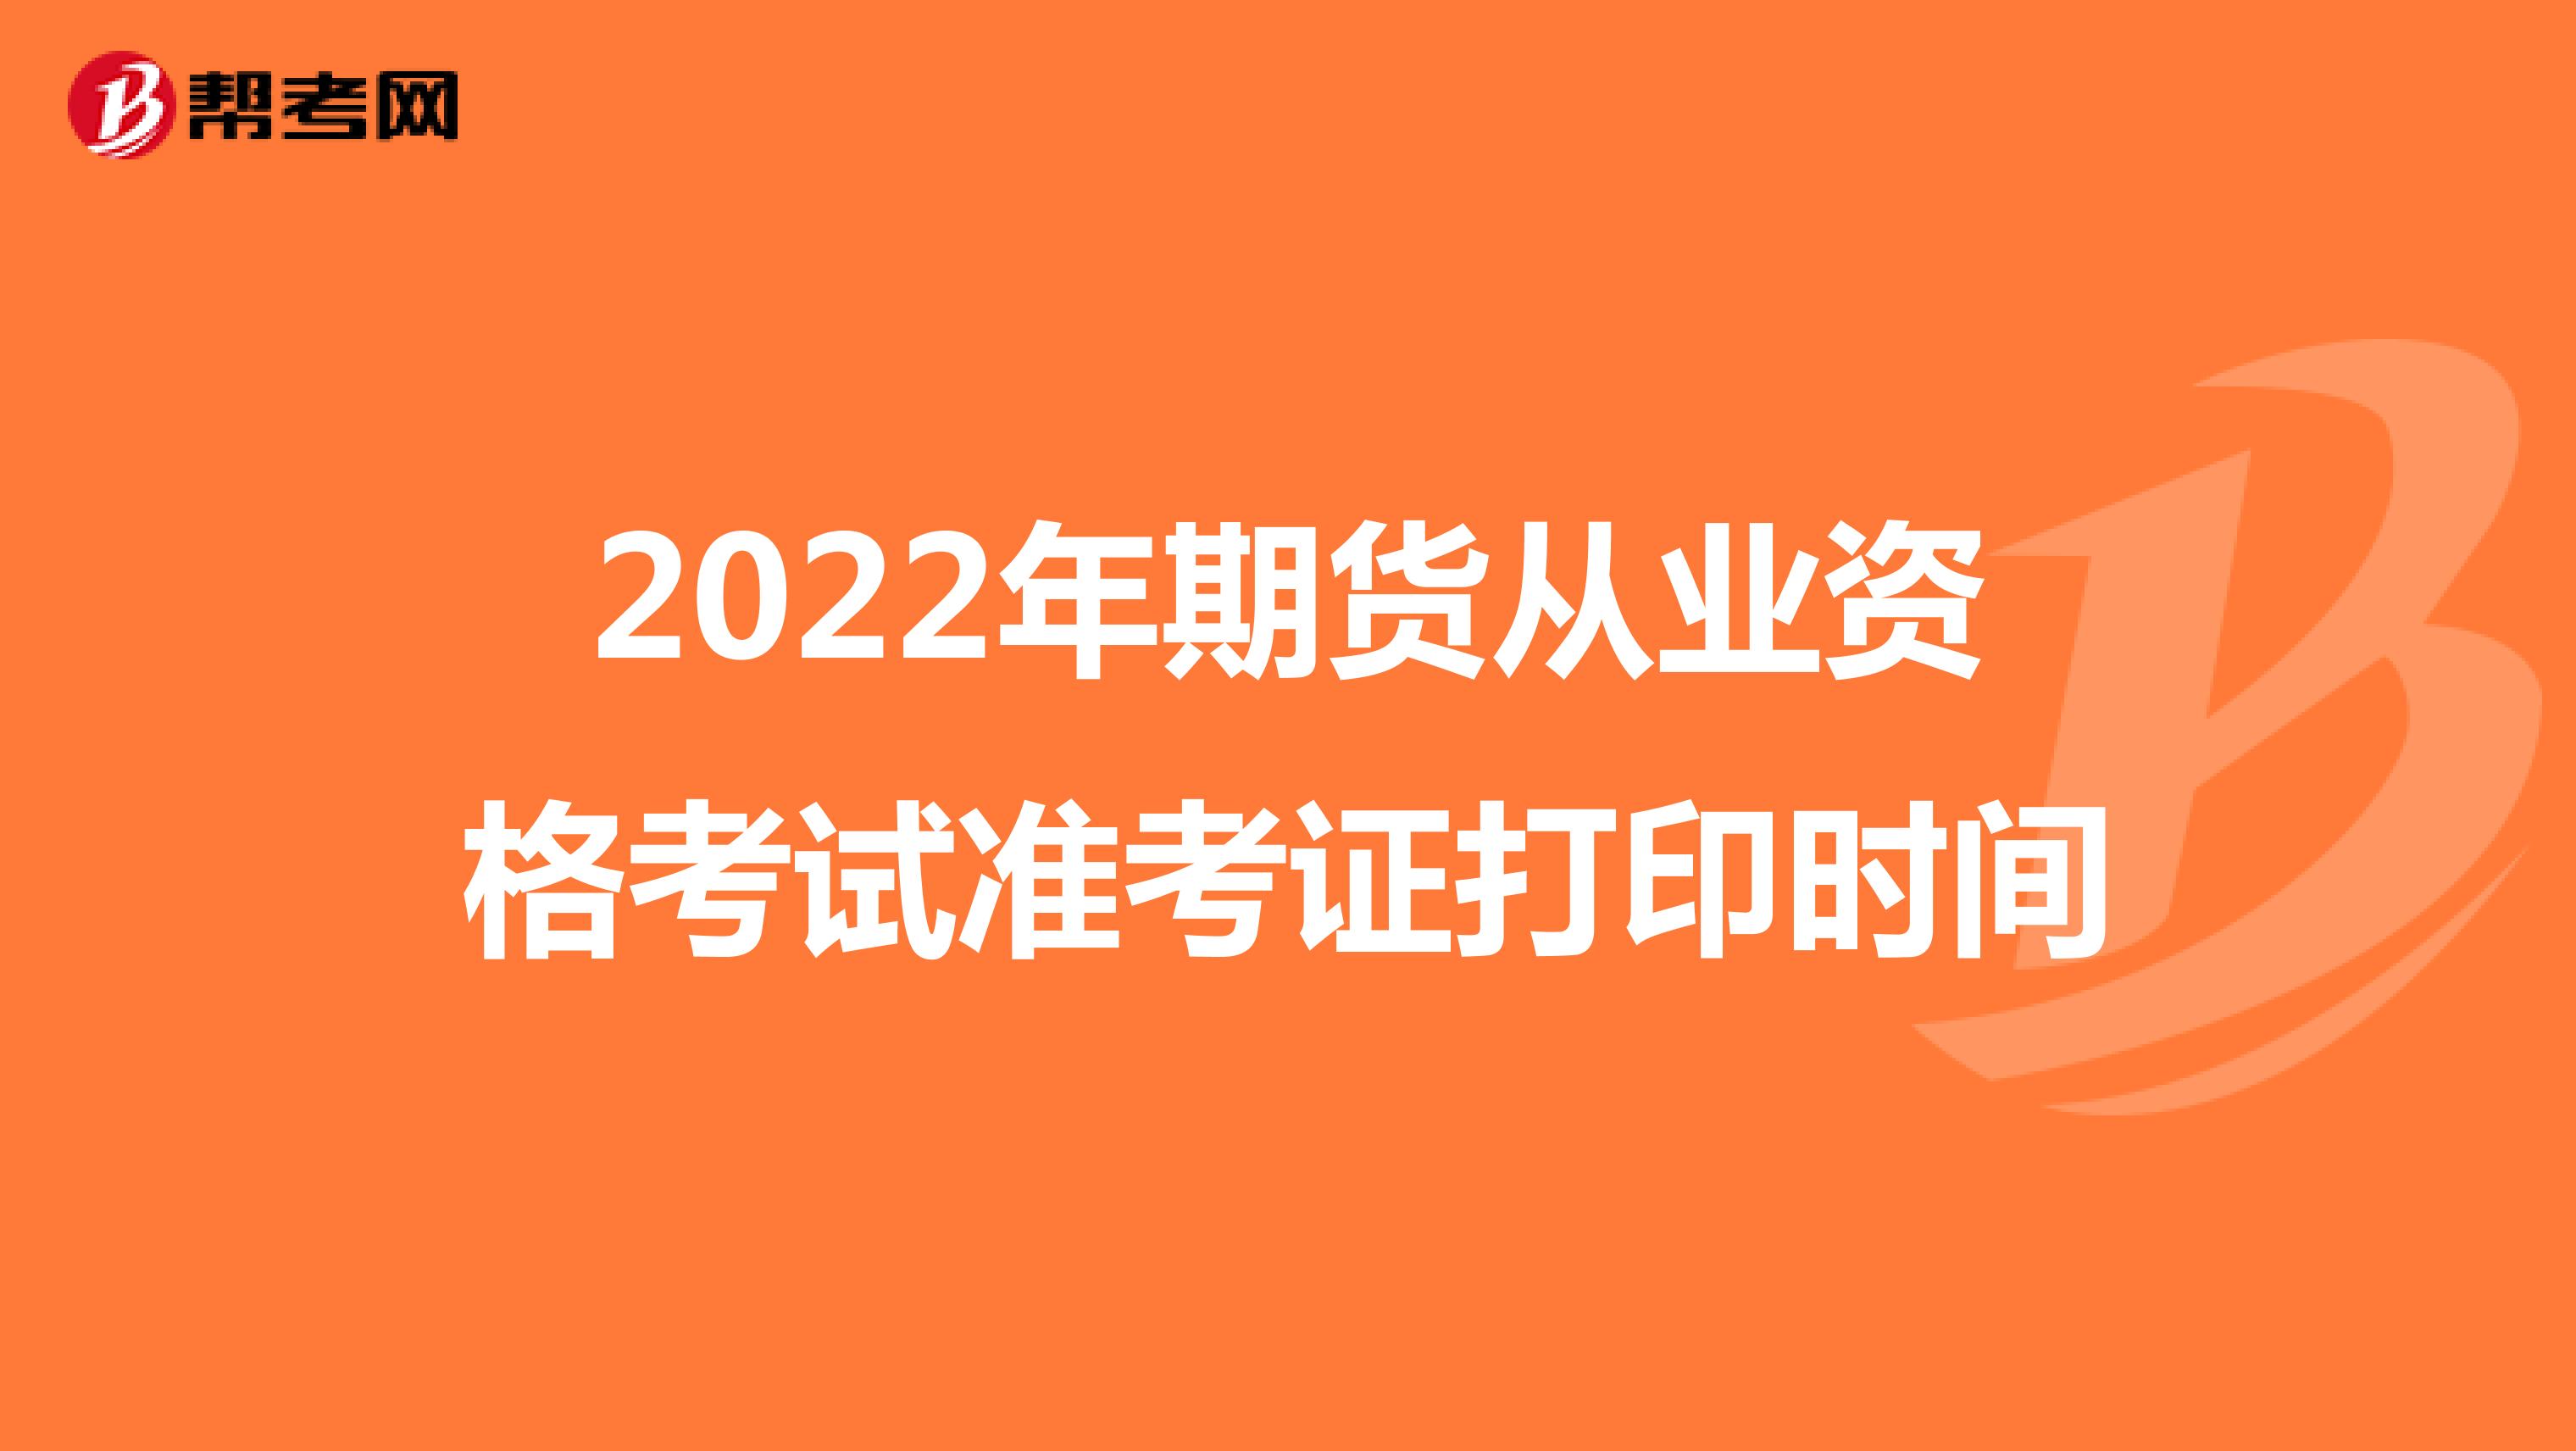 2022年期货从业资格考试准考证打印时间